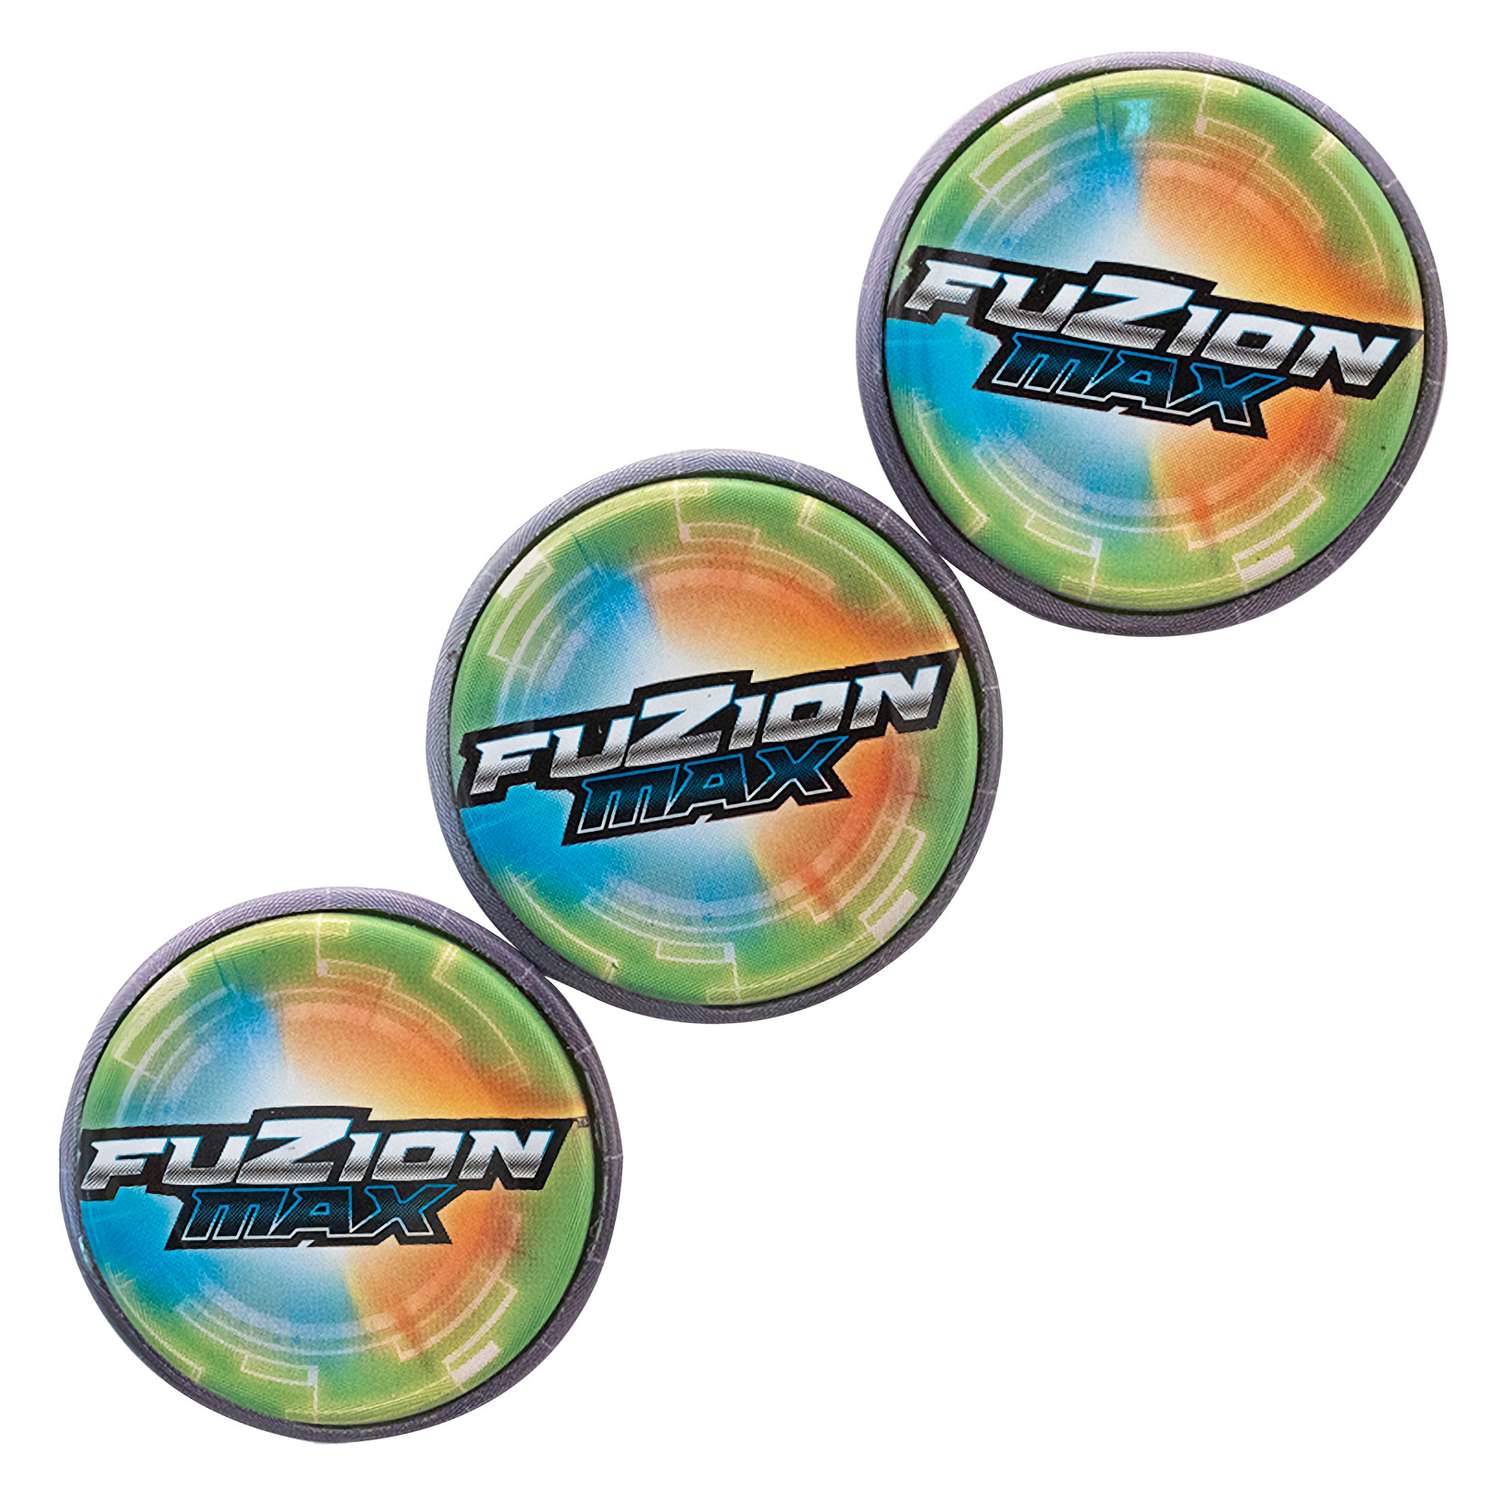 Набор игровой Fuzion Max Skyden с 3 энергочипами 54011 - фото 7